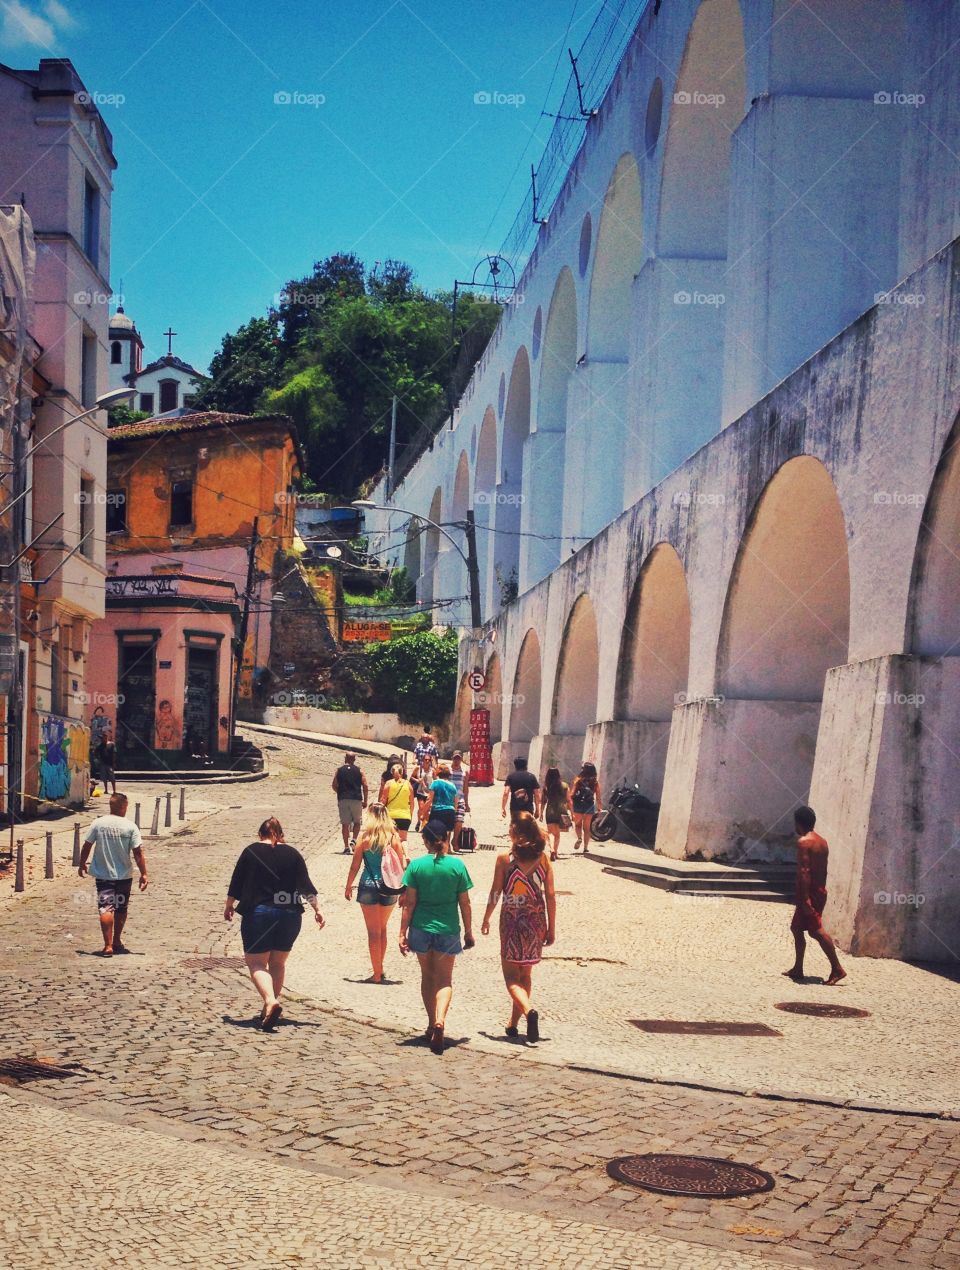 A day at Lapa. 
Rio de Janeiro, Brasil